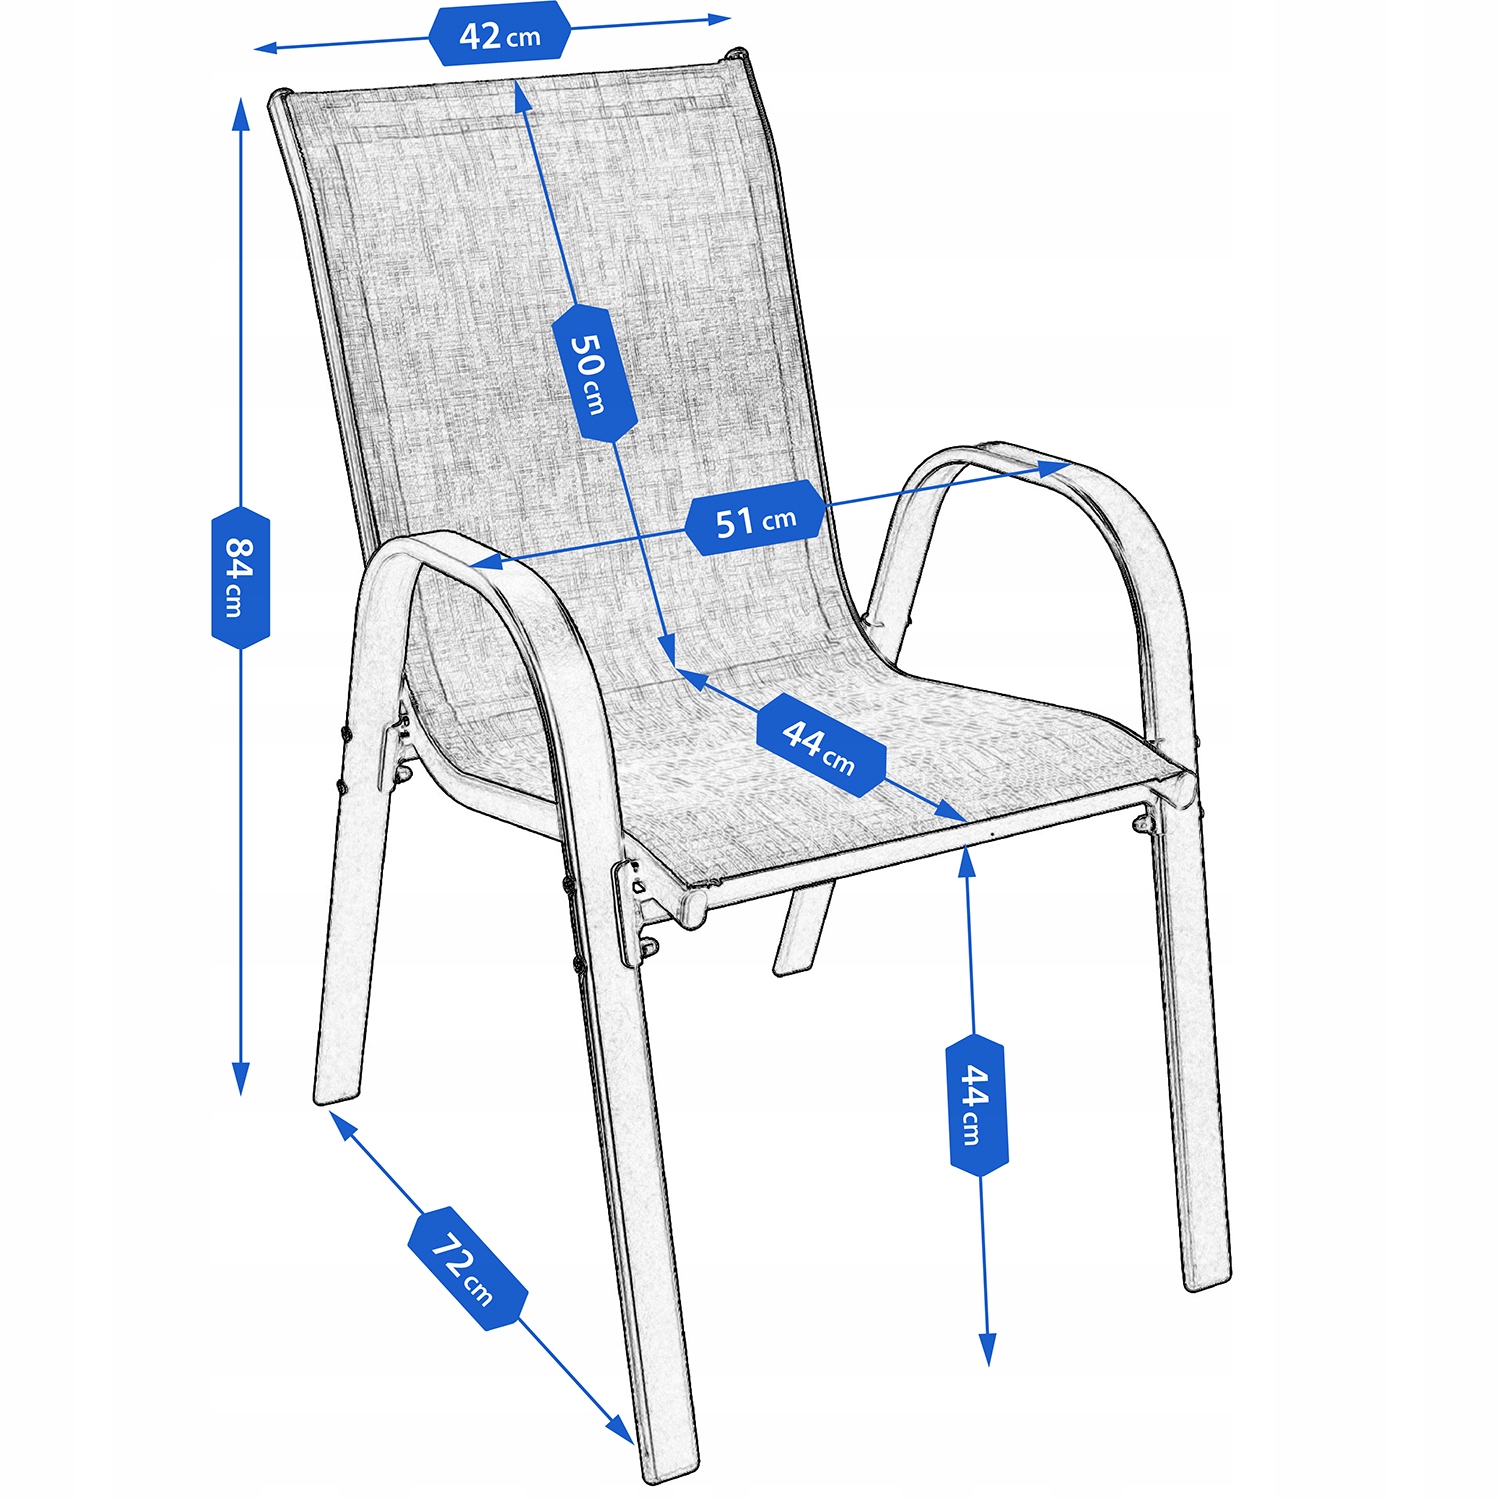 MEBLE OGRODOWE taras zestaw komplet stół krzesł, , OM-968059.5900410968059, Kod producenta OM-968059